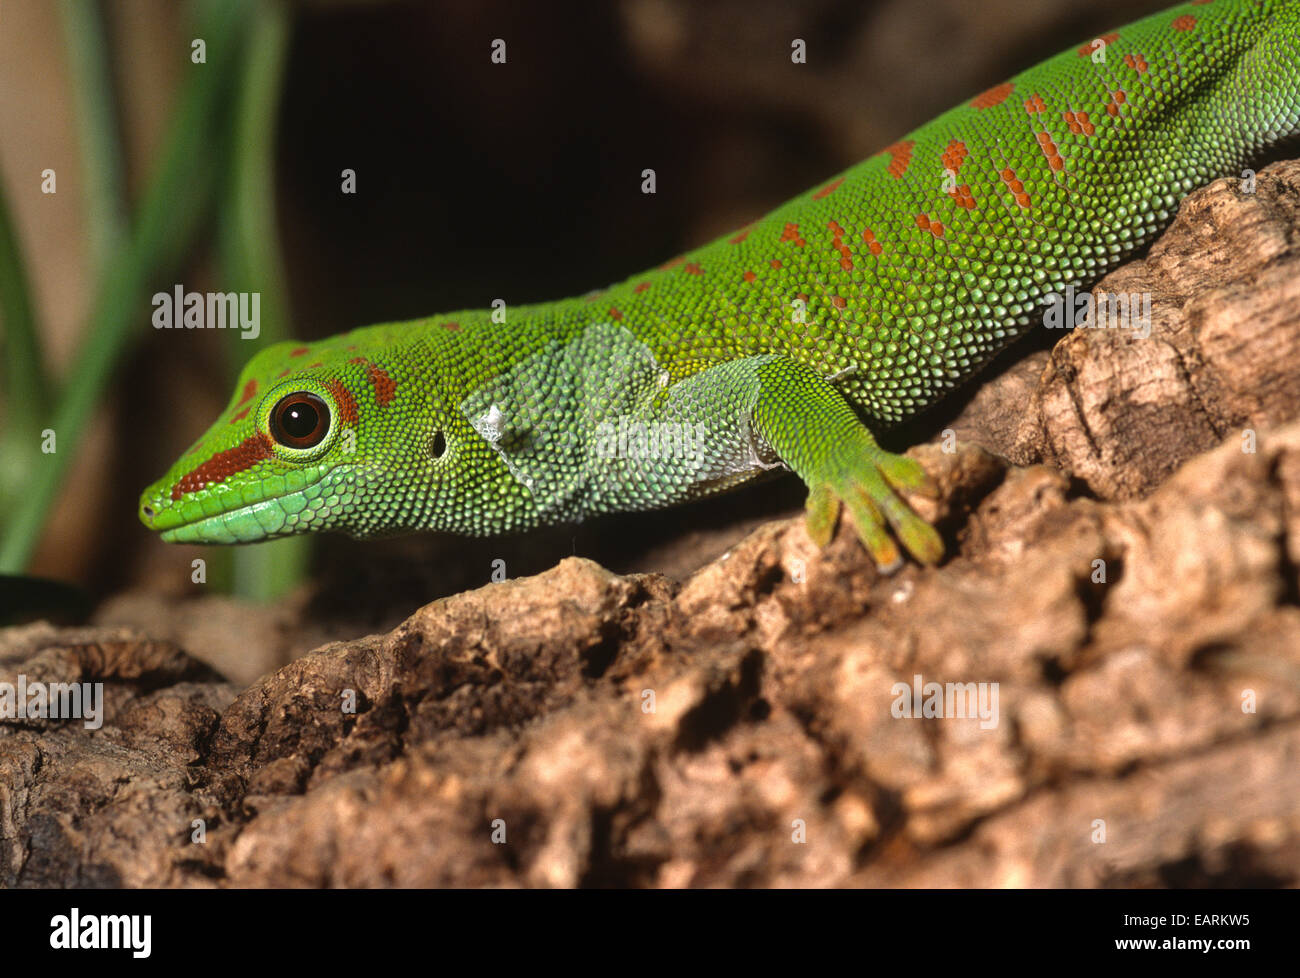 Madagascar Day Gecko - Phelsuma madagascariensis, Gekkonidae, Madagascar, Africa, Stock Photo